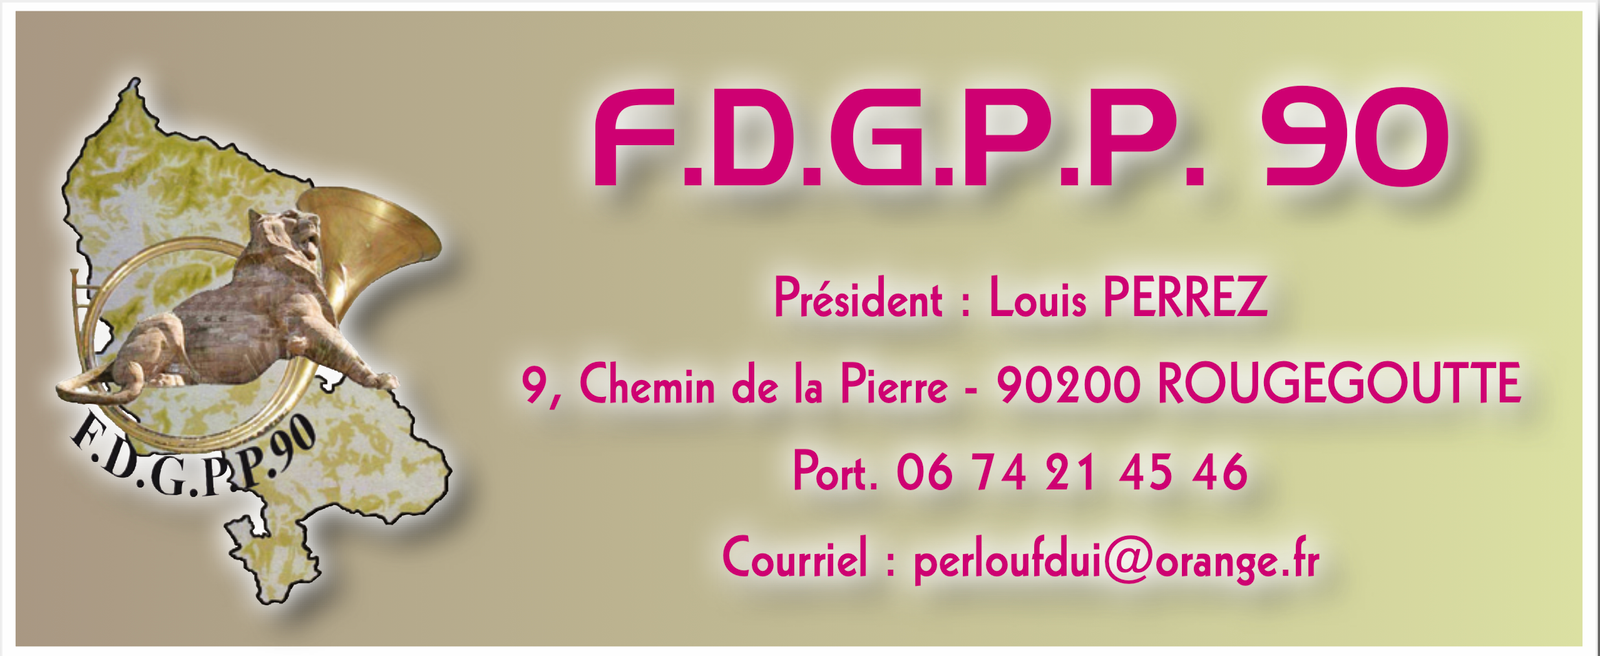 FDGPP 90